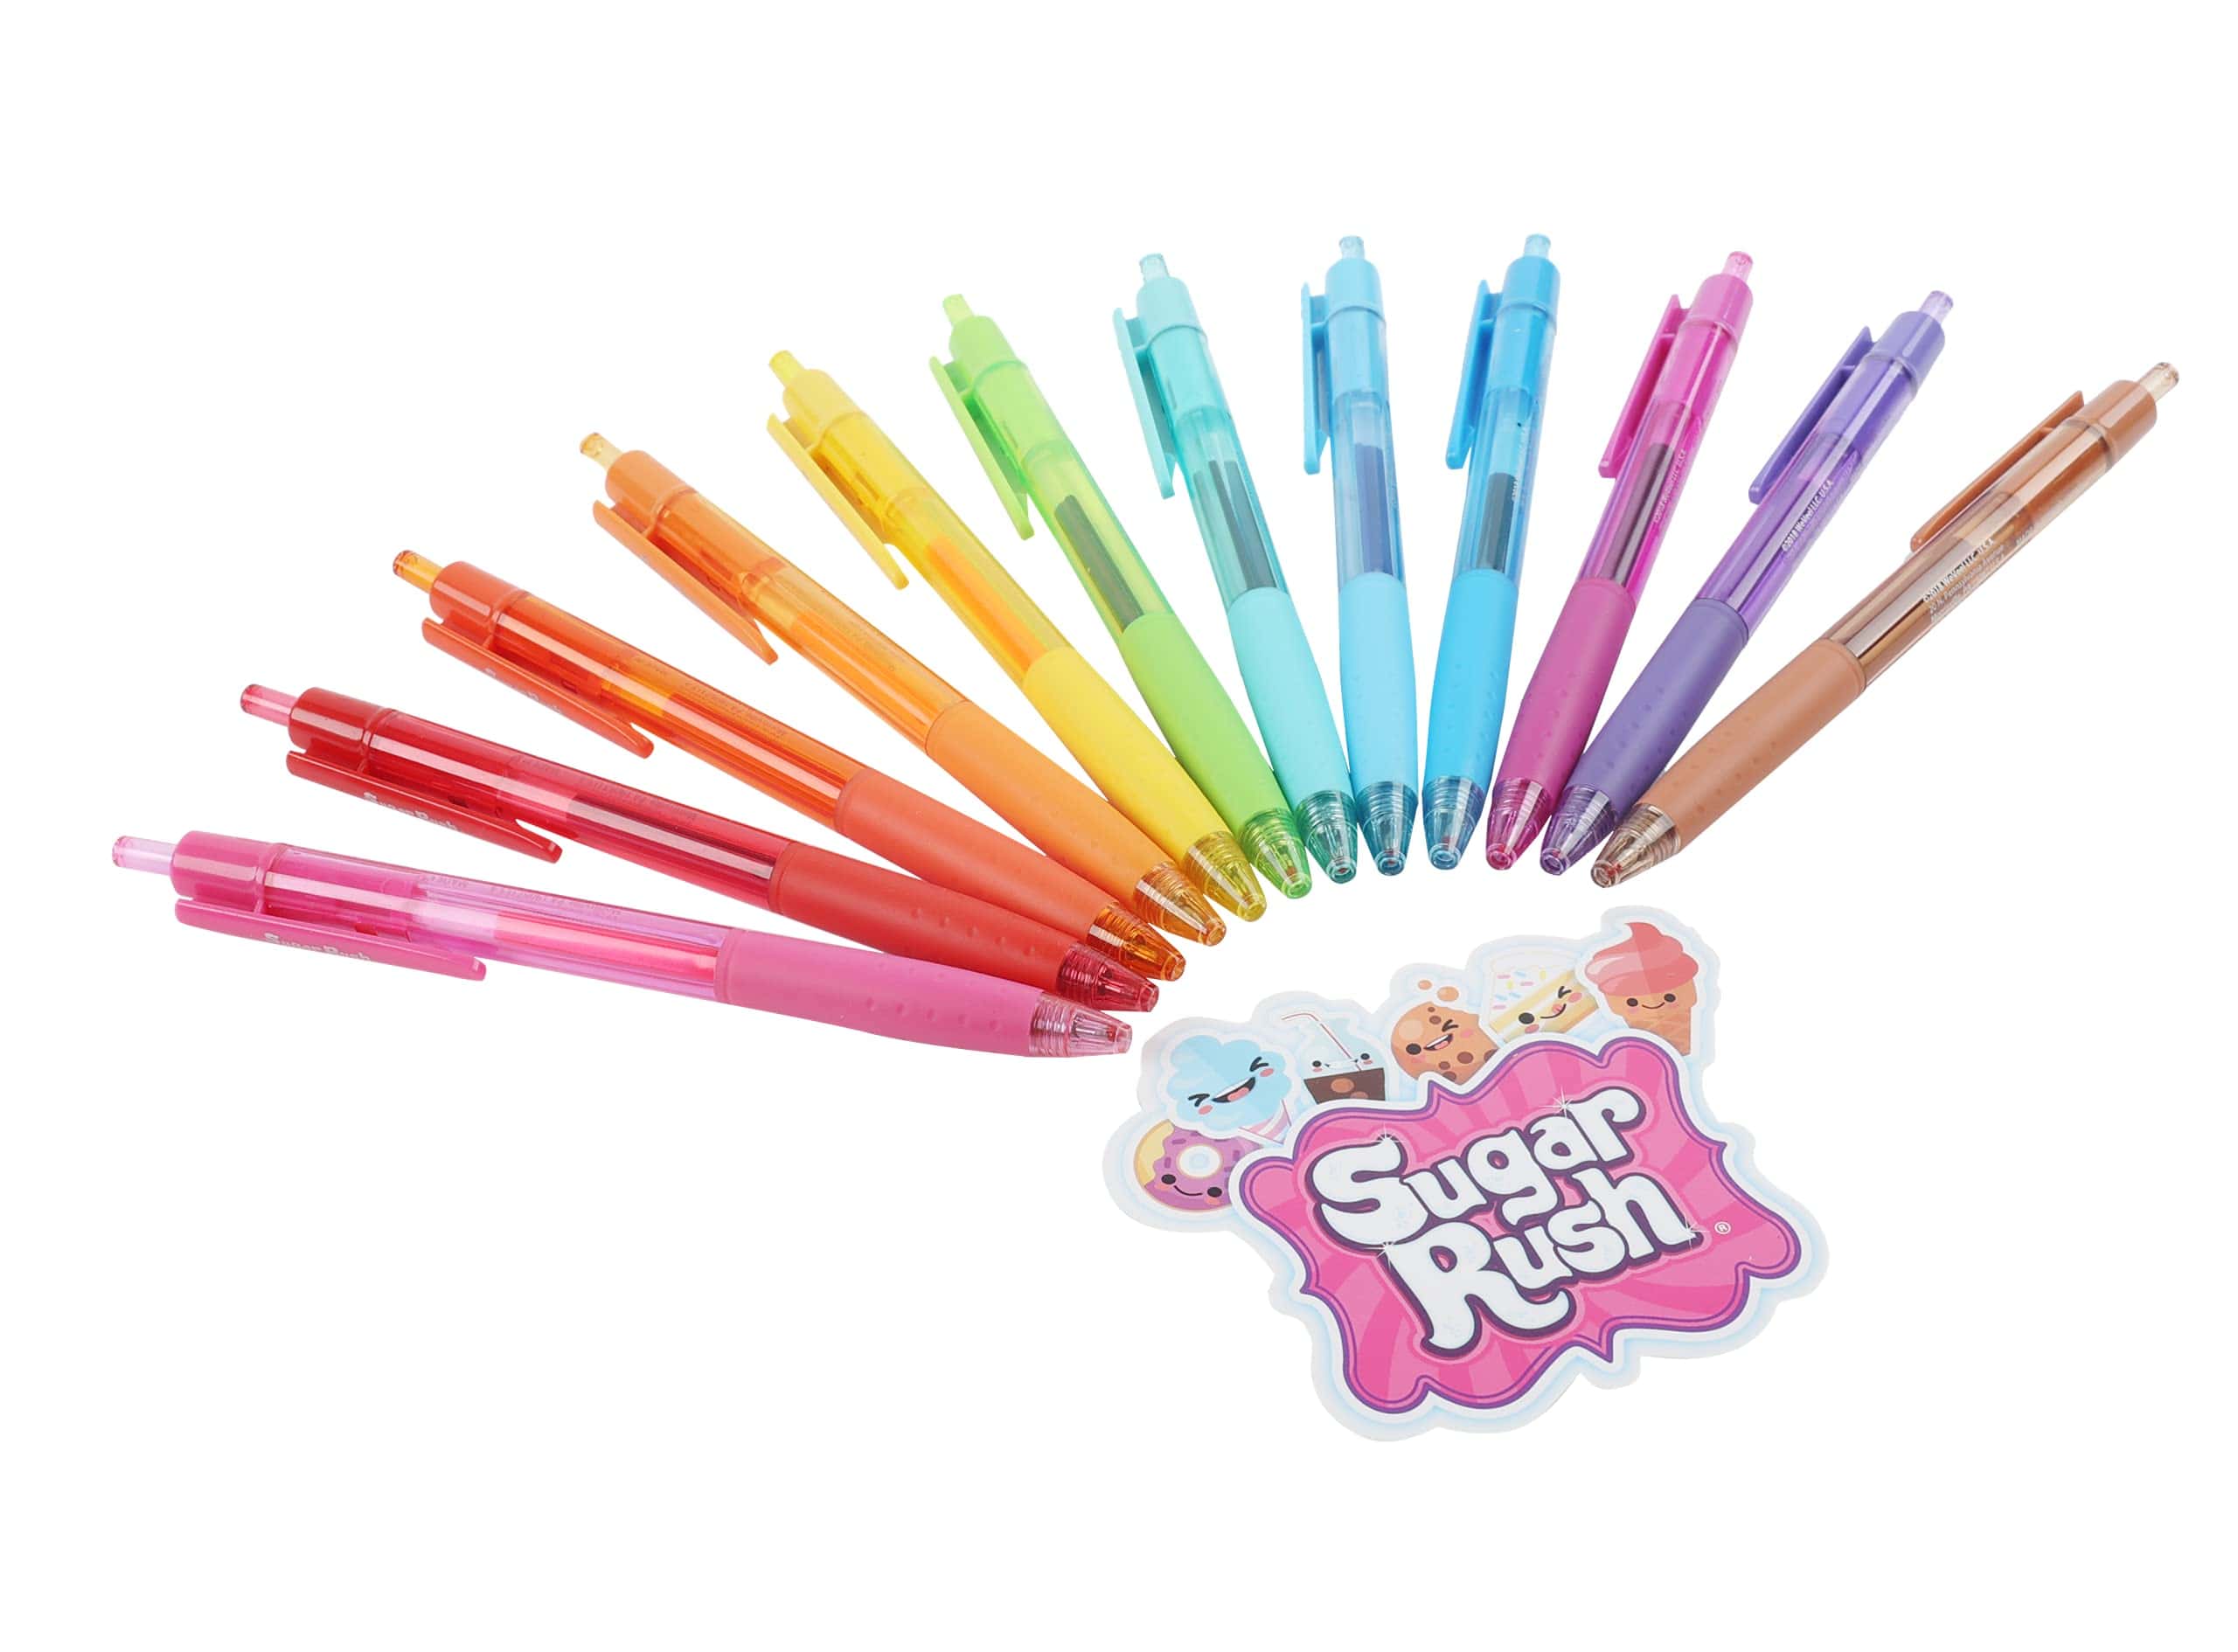 Scented Sugar Rush Gel Pens - 5-pack